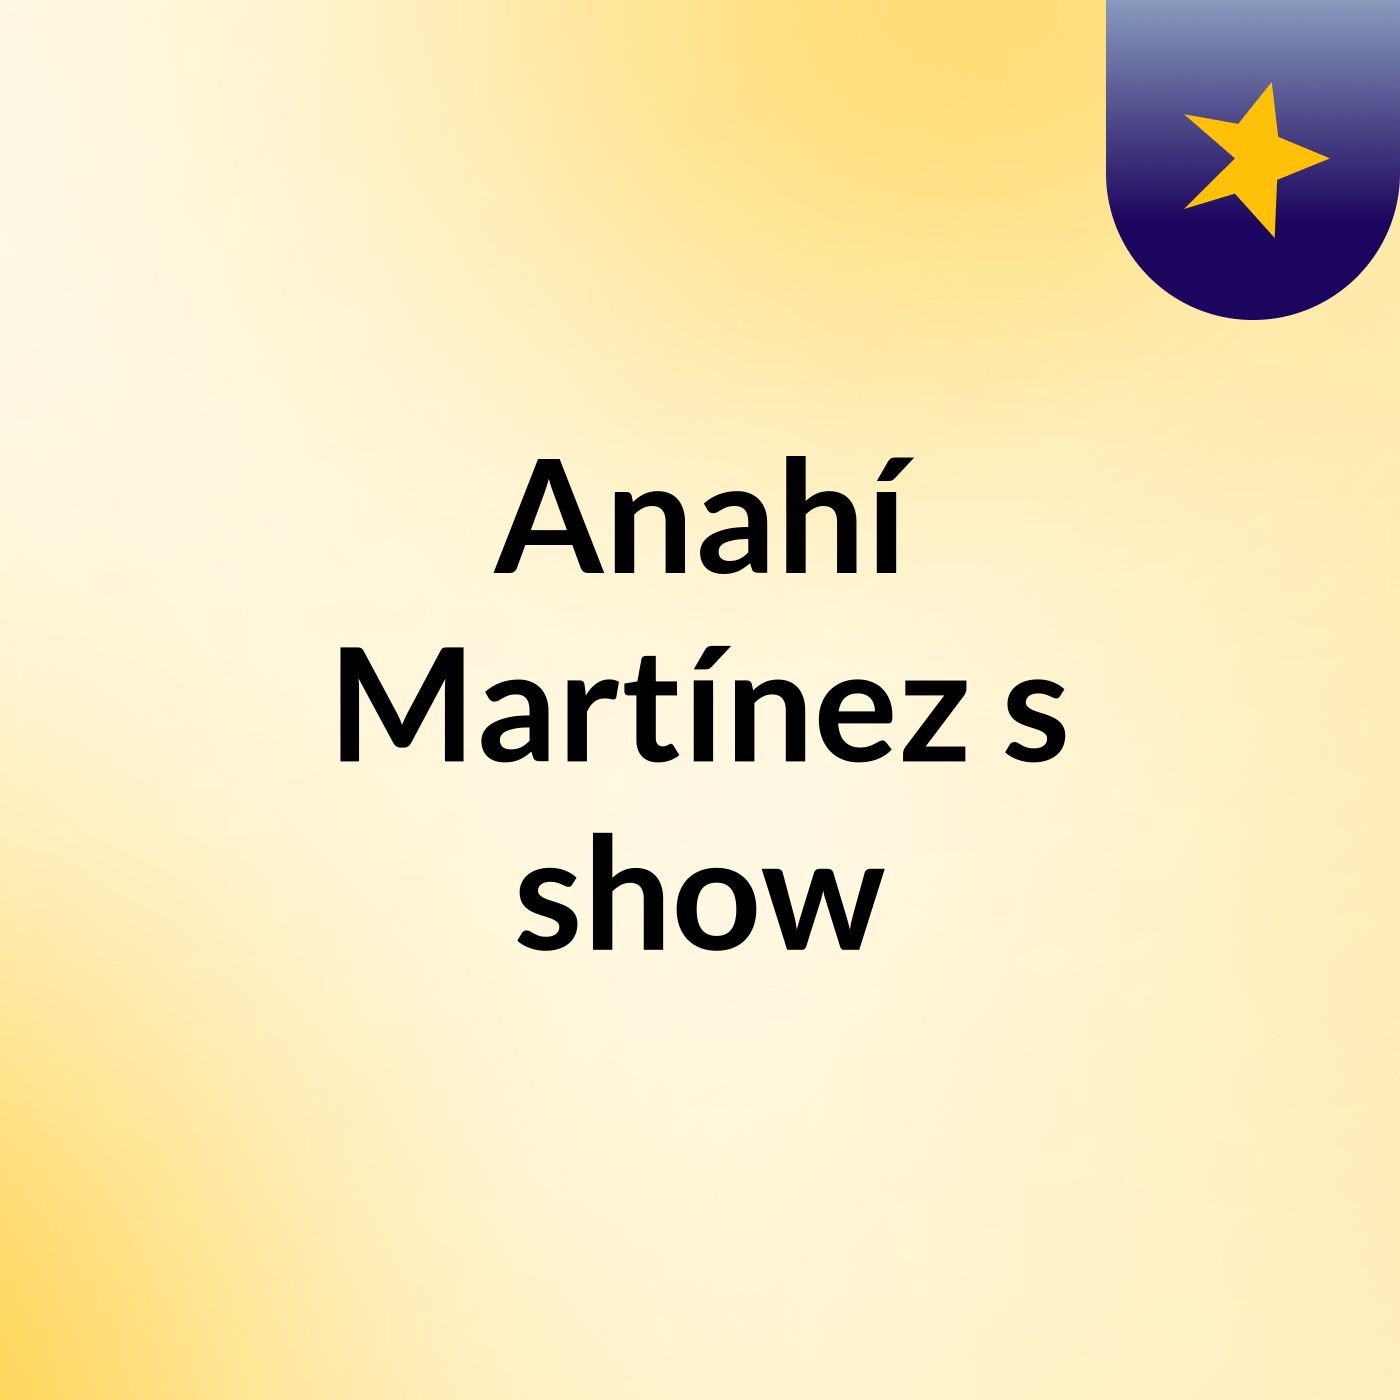 Anahí Martínez's show